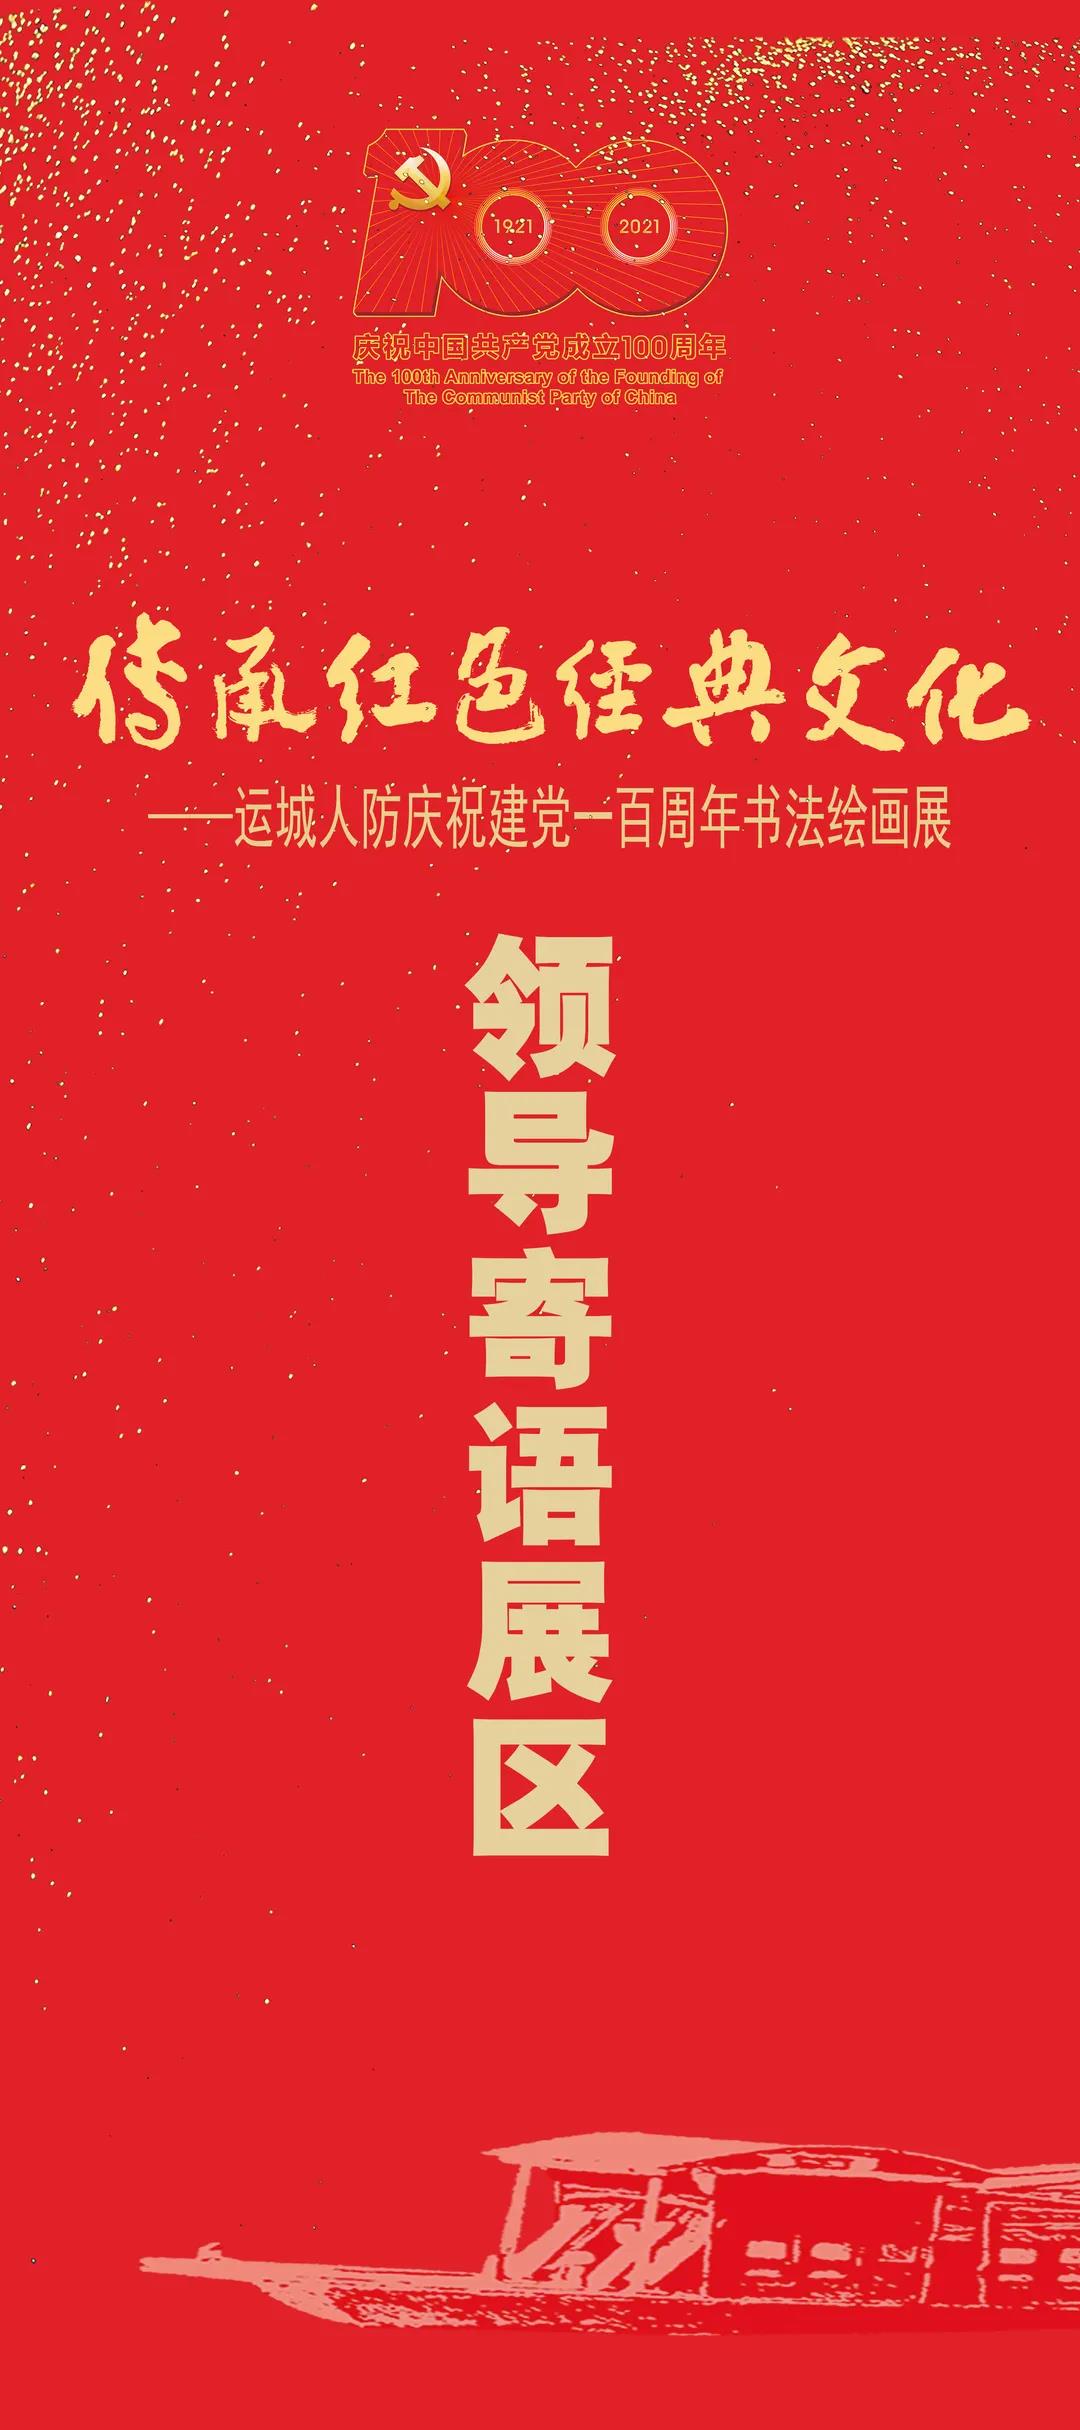 庆祝建党100周年展览100 zhounian